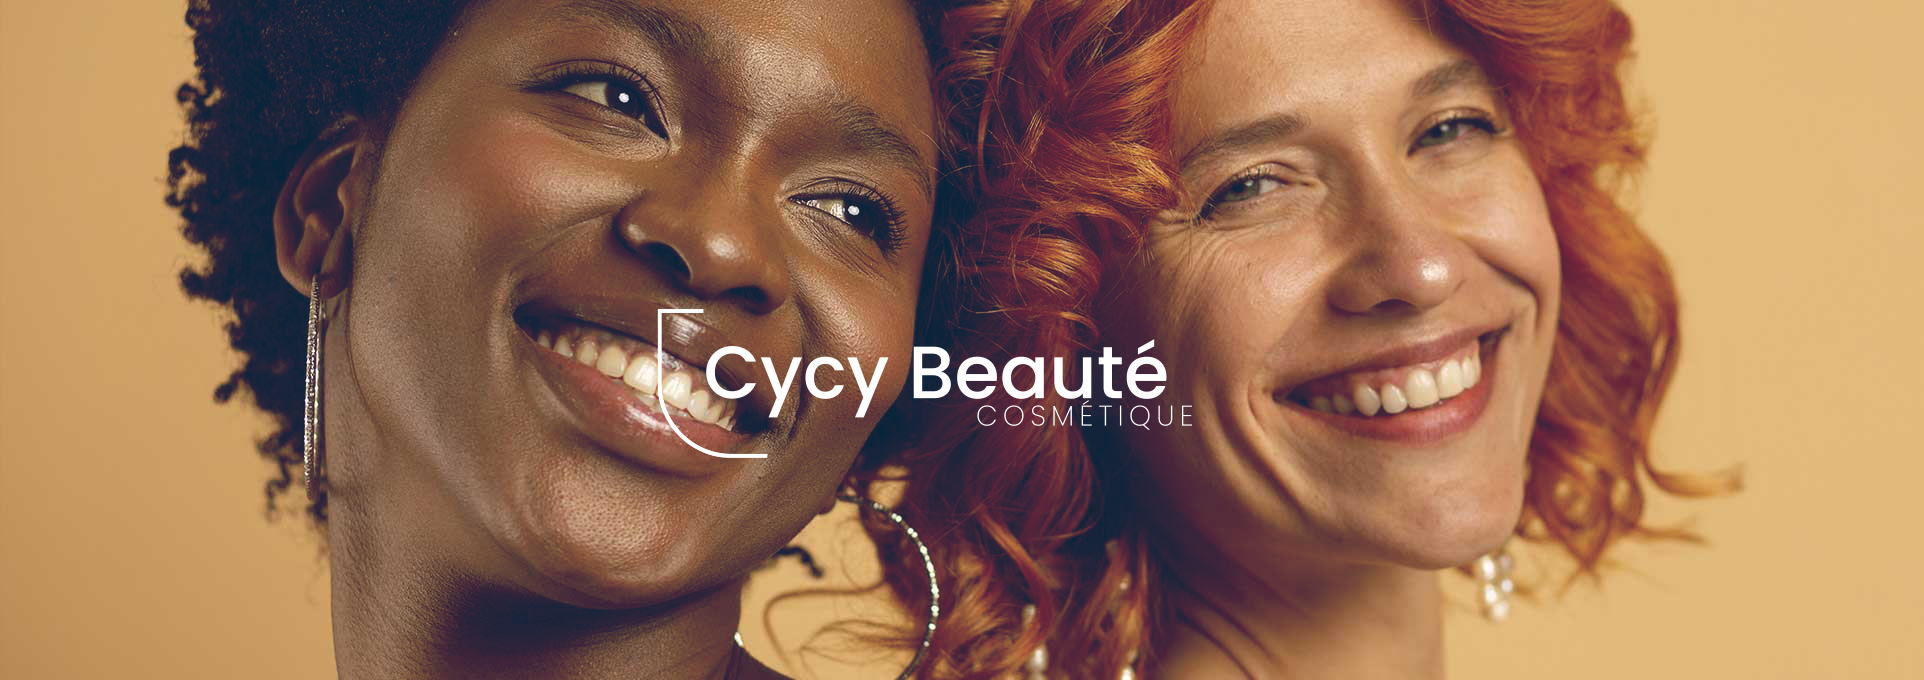 Branding & Site E-Commerce Cycy Beauté Cosmétiques